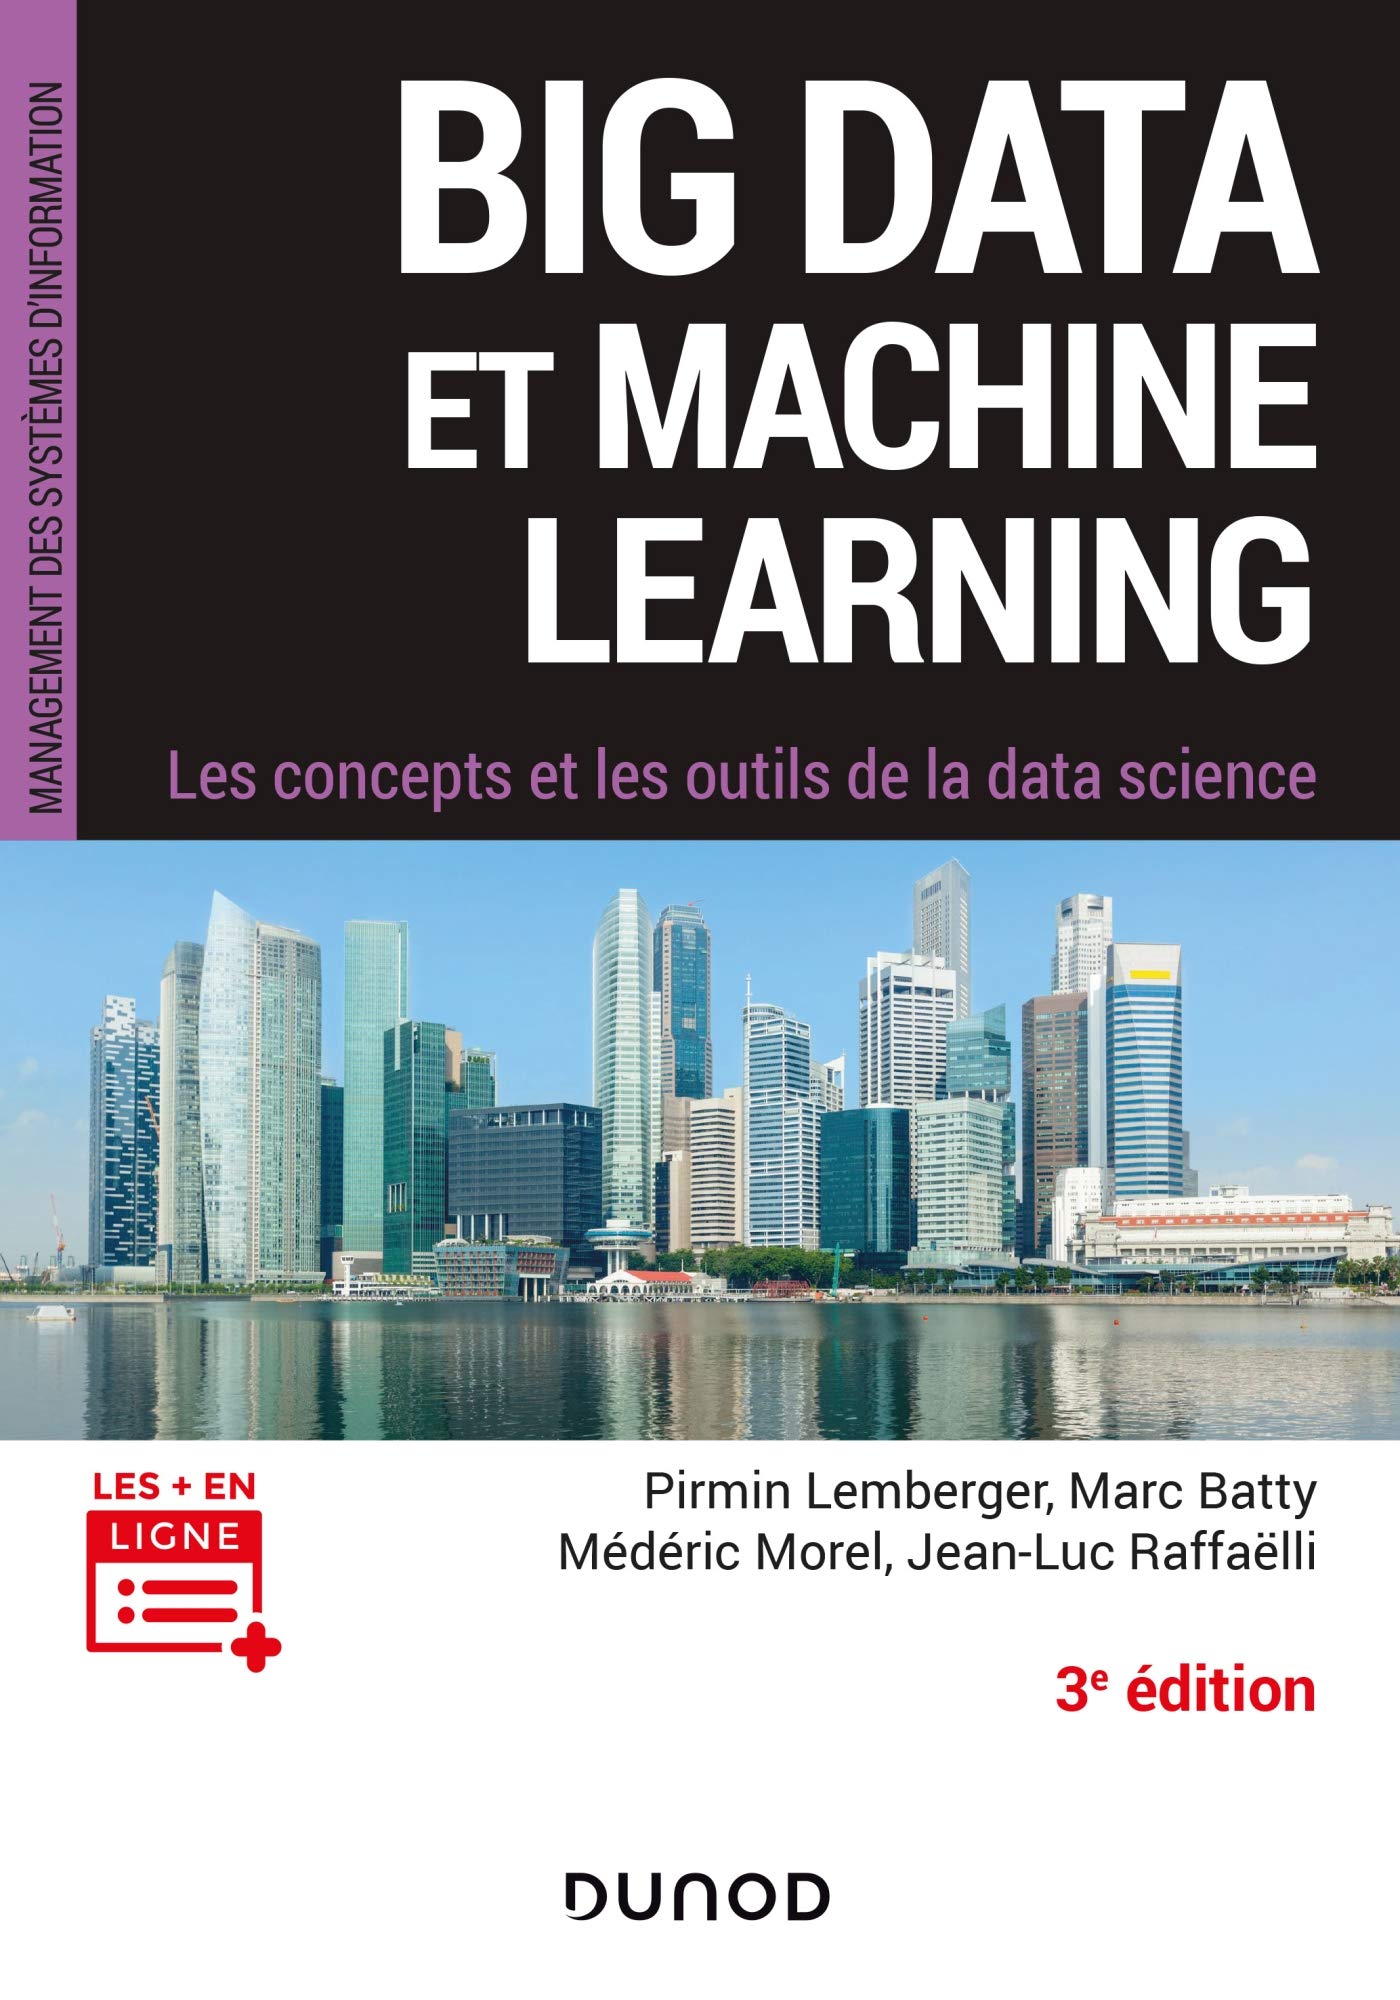 Big Data et Machine Learning - 3e éd.: Les concepts et les outils de la data science (Management des systèmes d'information) (French Edition)